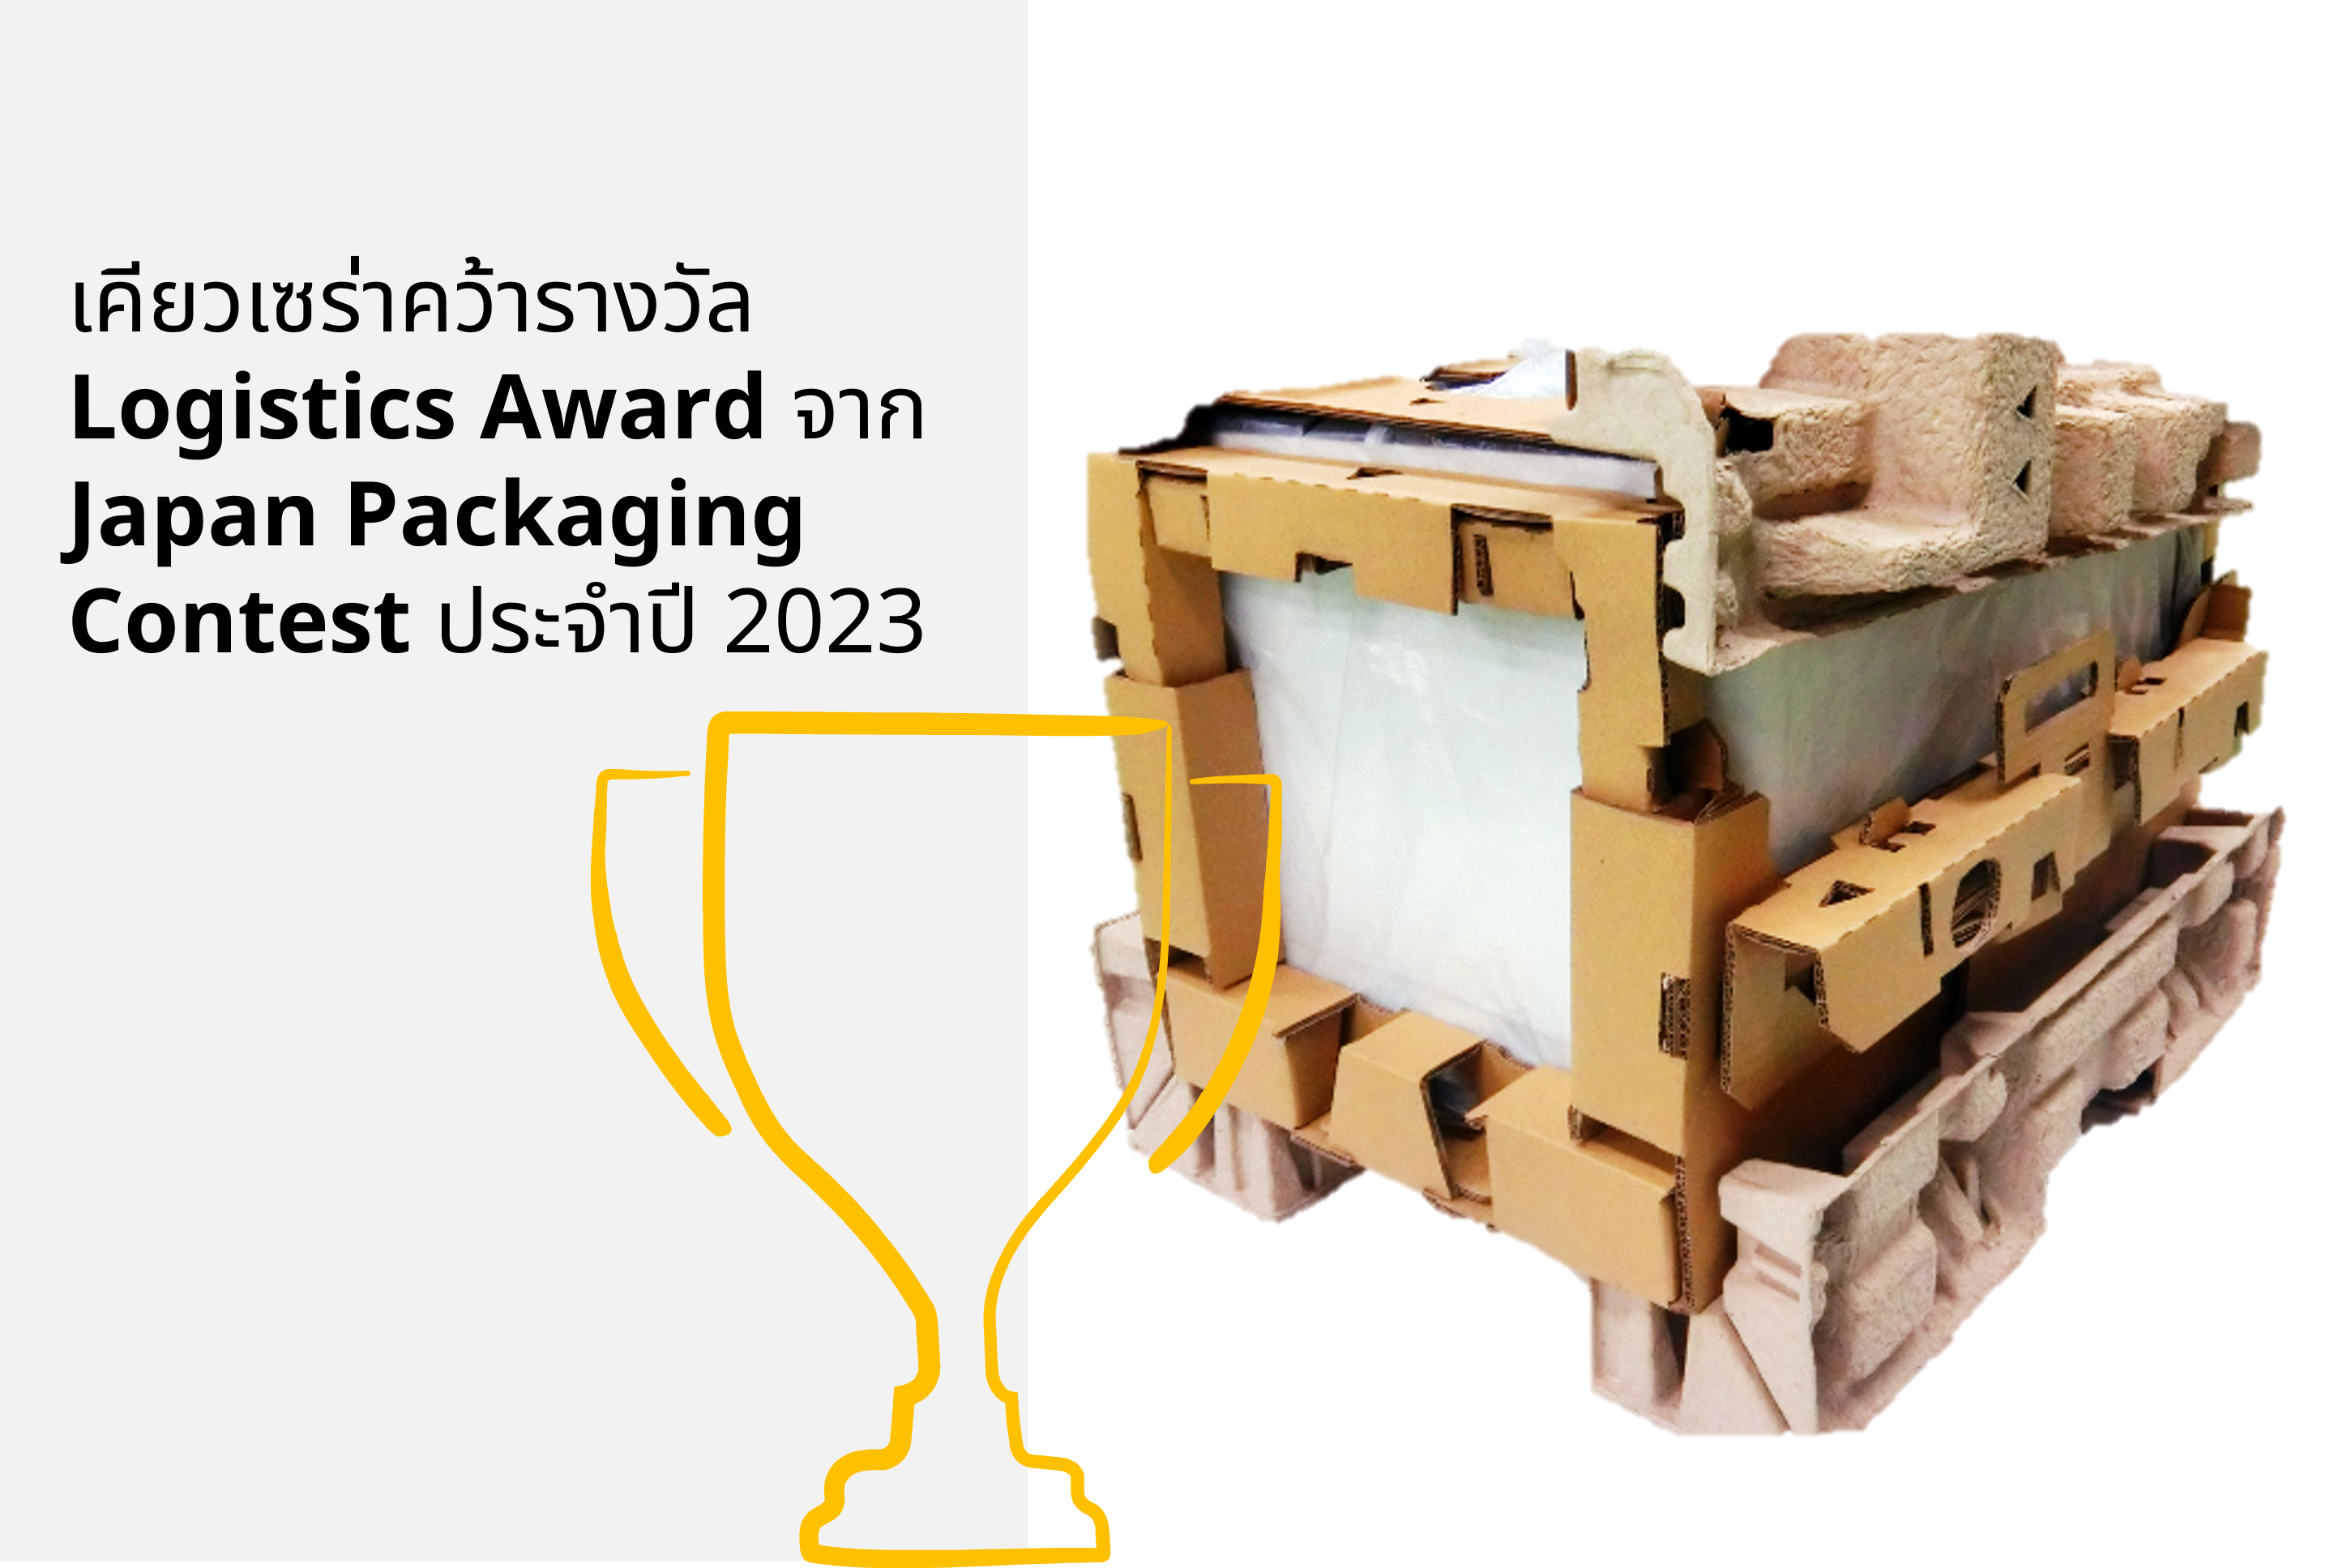 เคียวเซร่าคว้ารางวัล Logistics Award จาก Japan Packaging Contest ประจำปี 2023